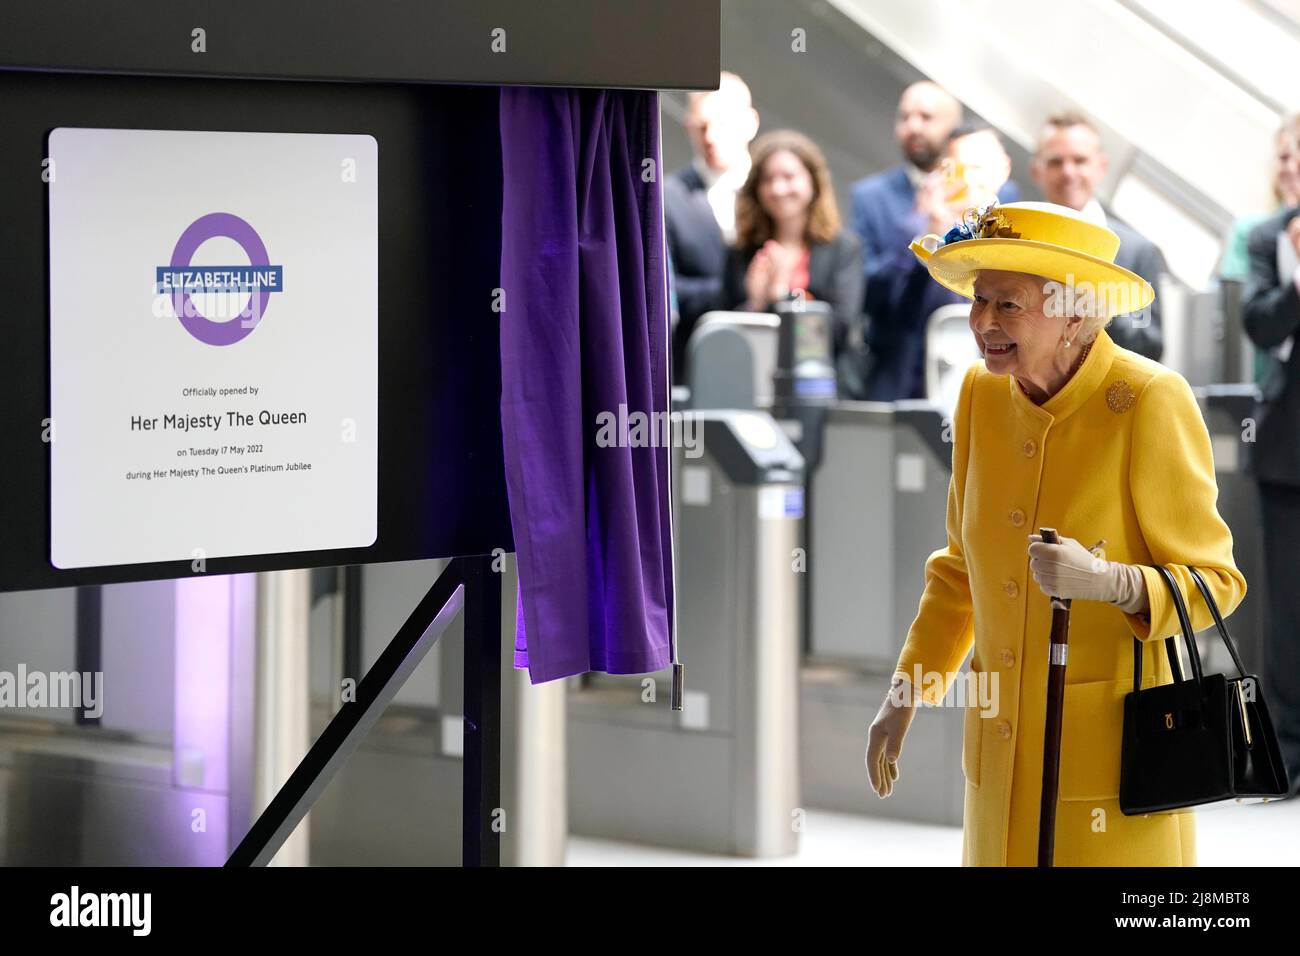 Queen Elizabeth II enthüllt eine Gedenktafel zur offiziellen Eröffnung der Elizabeth Line am Bahnhof Paddington in London, um die Fertigstellung des Londoner Crossrail-Projekts zu markieren. Bilddatum: Dienstag, 17. Mai 2022. Stockfoto